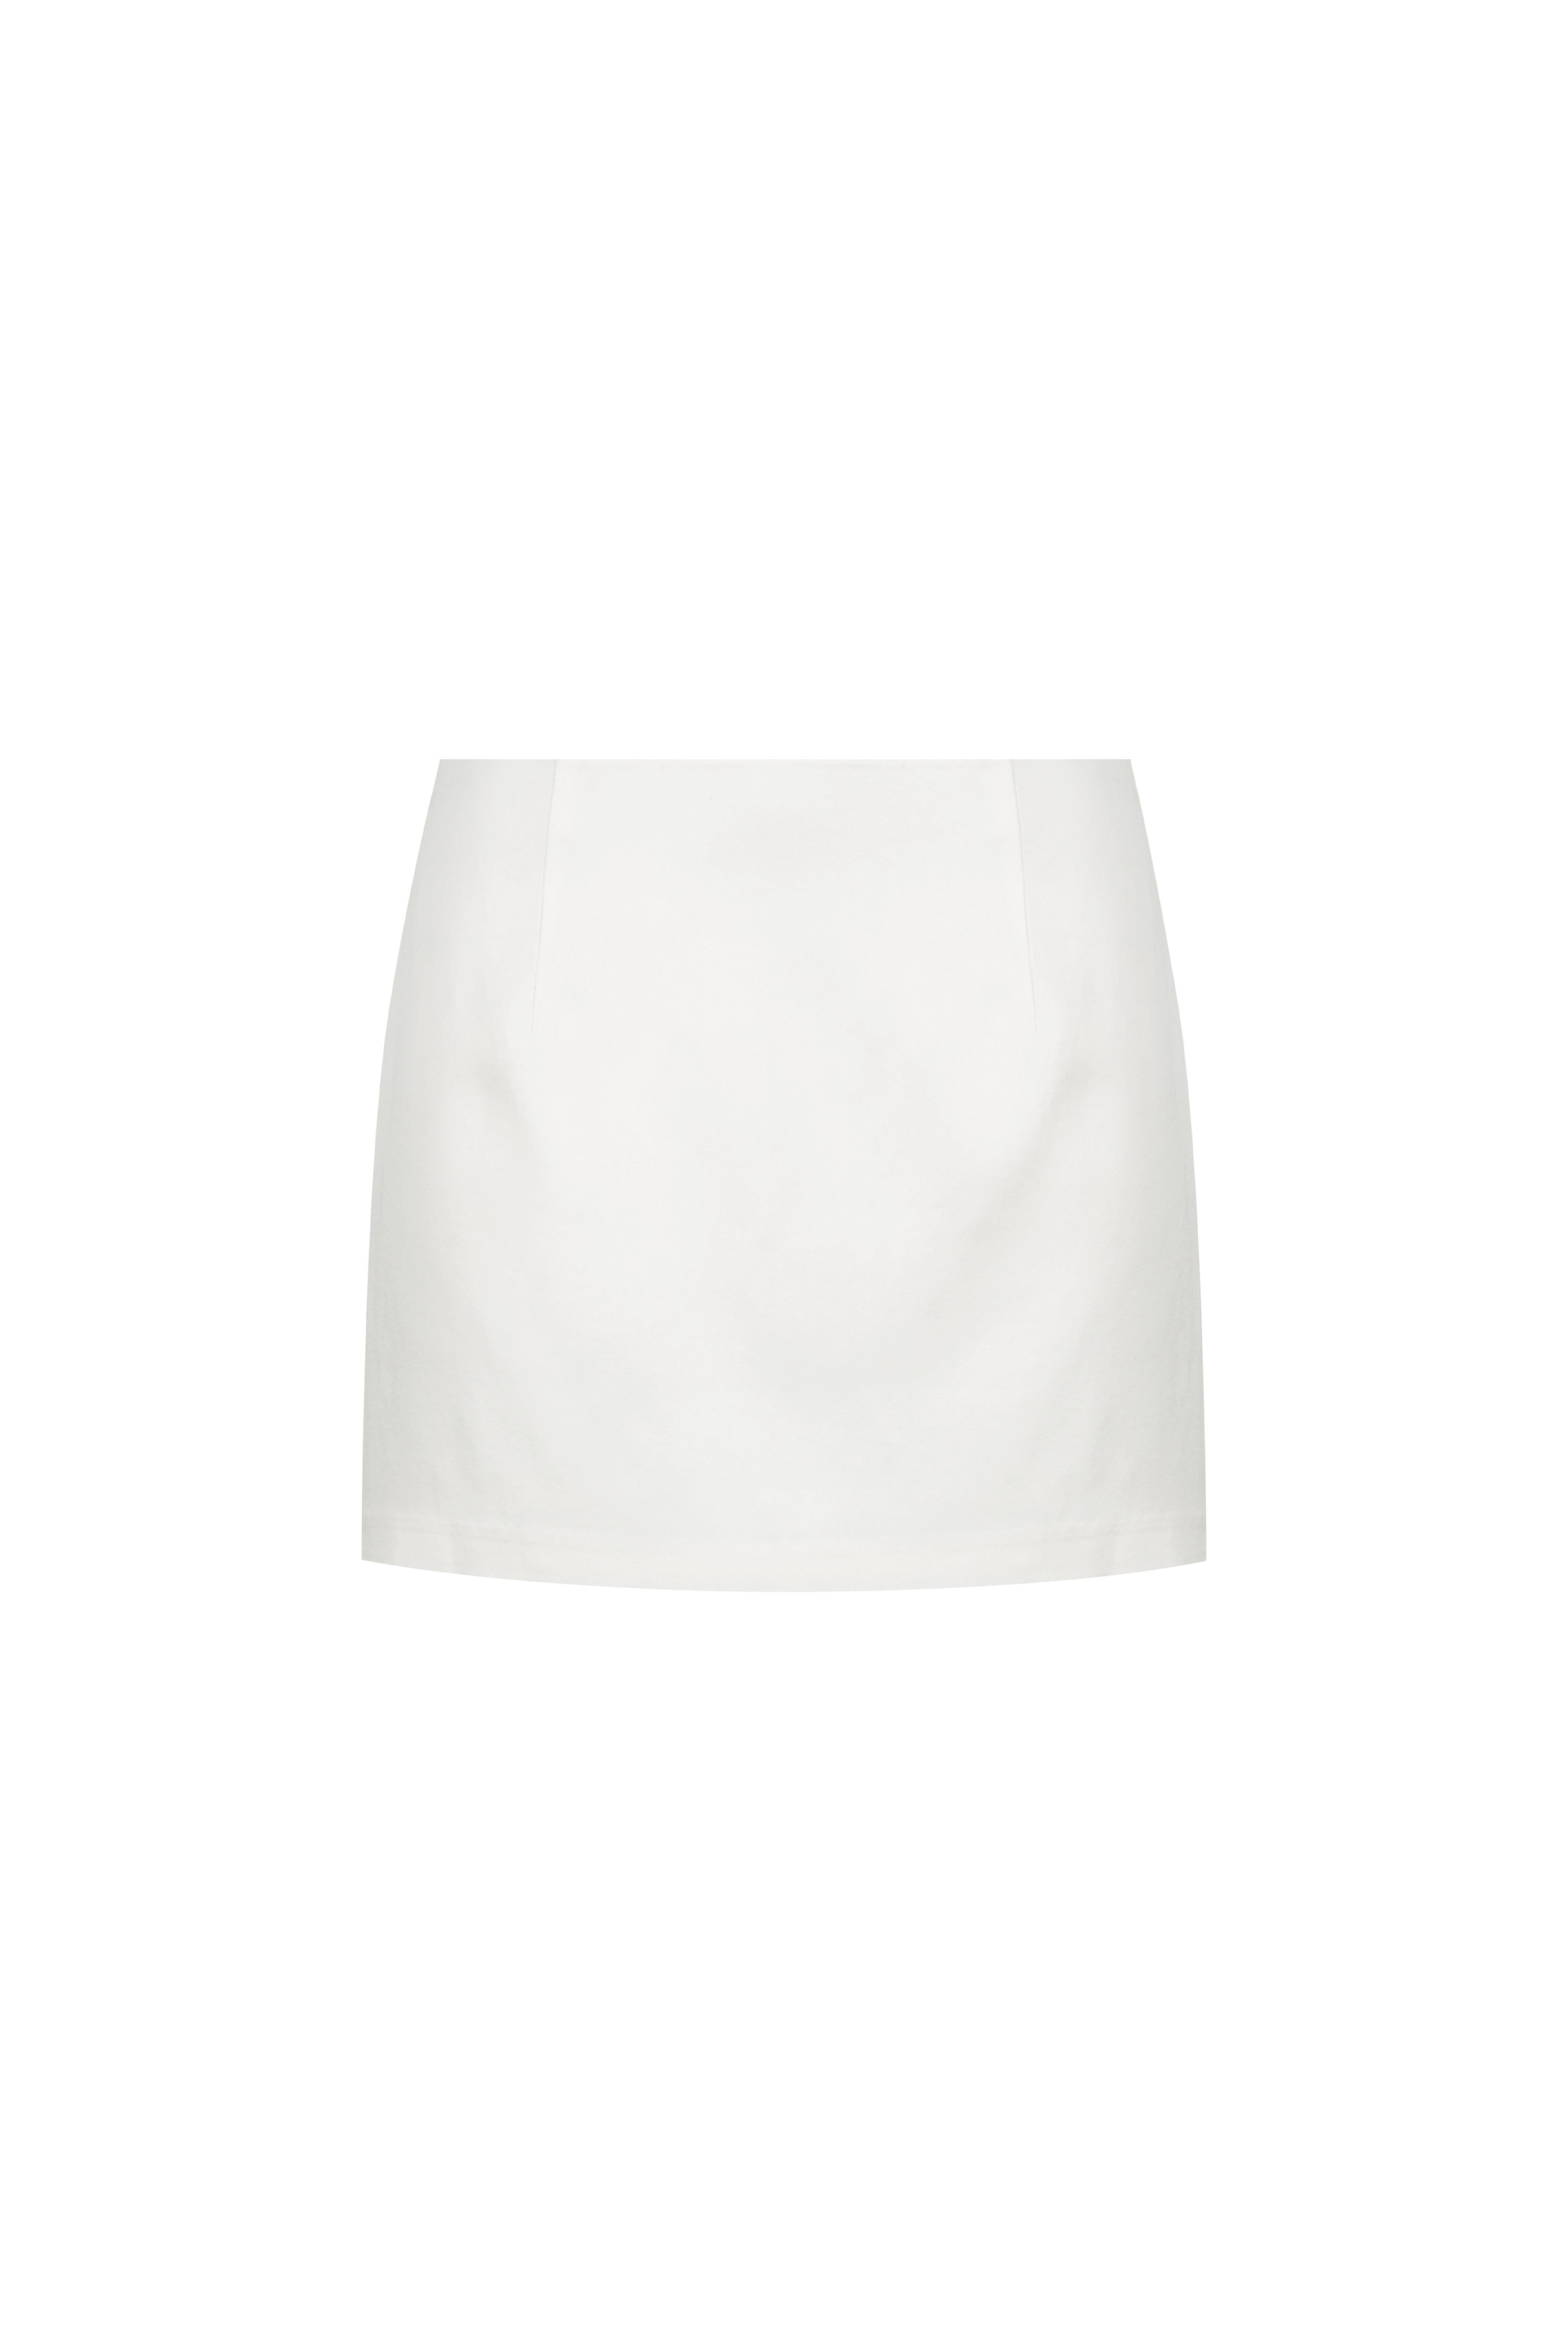 April Skirt // Pearl